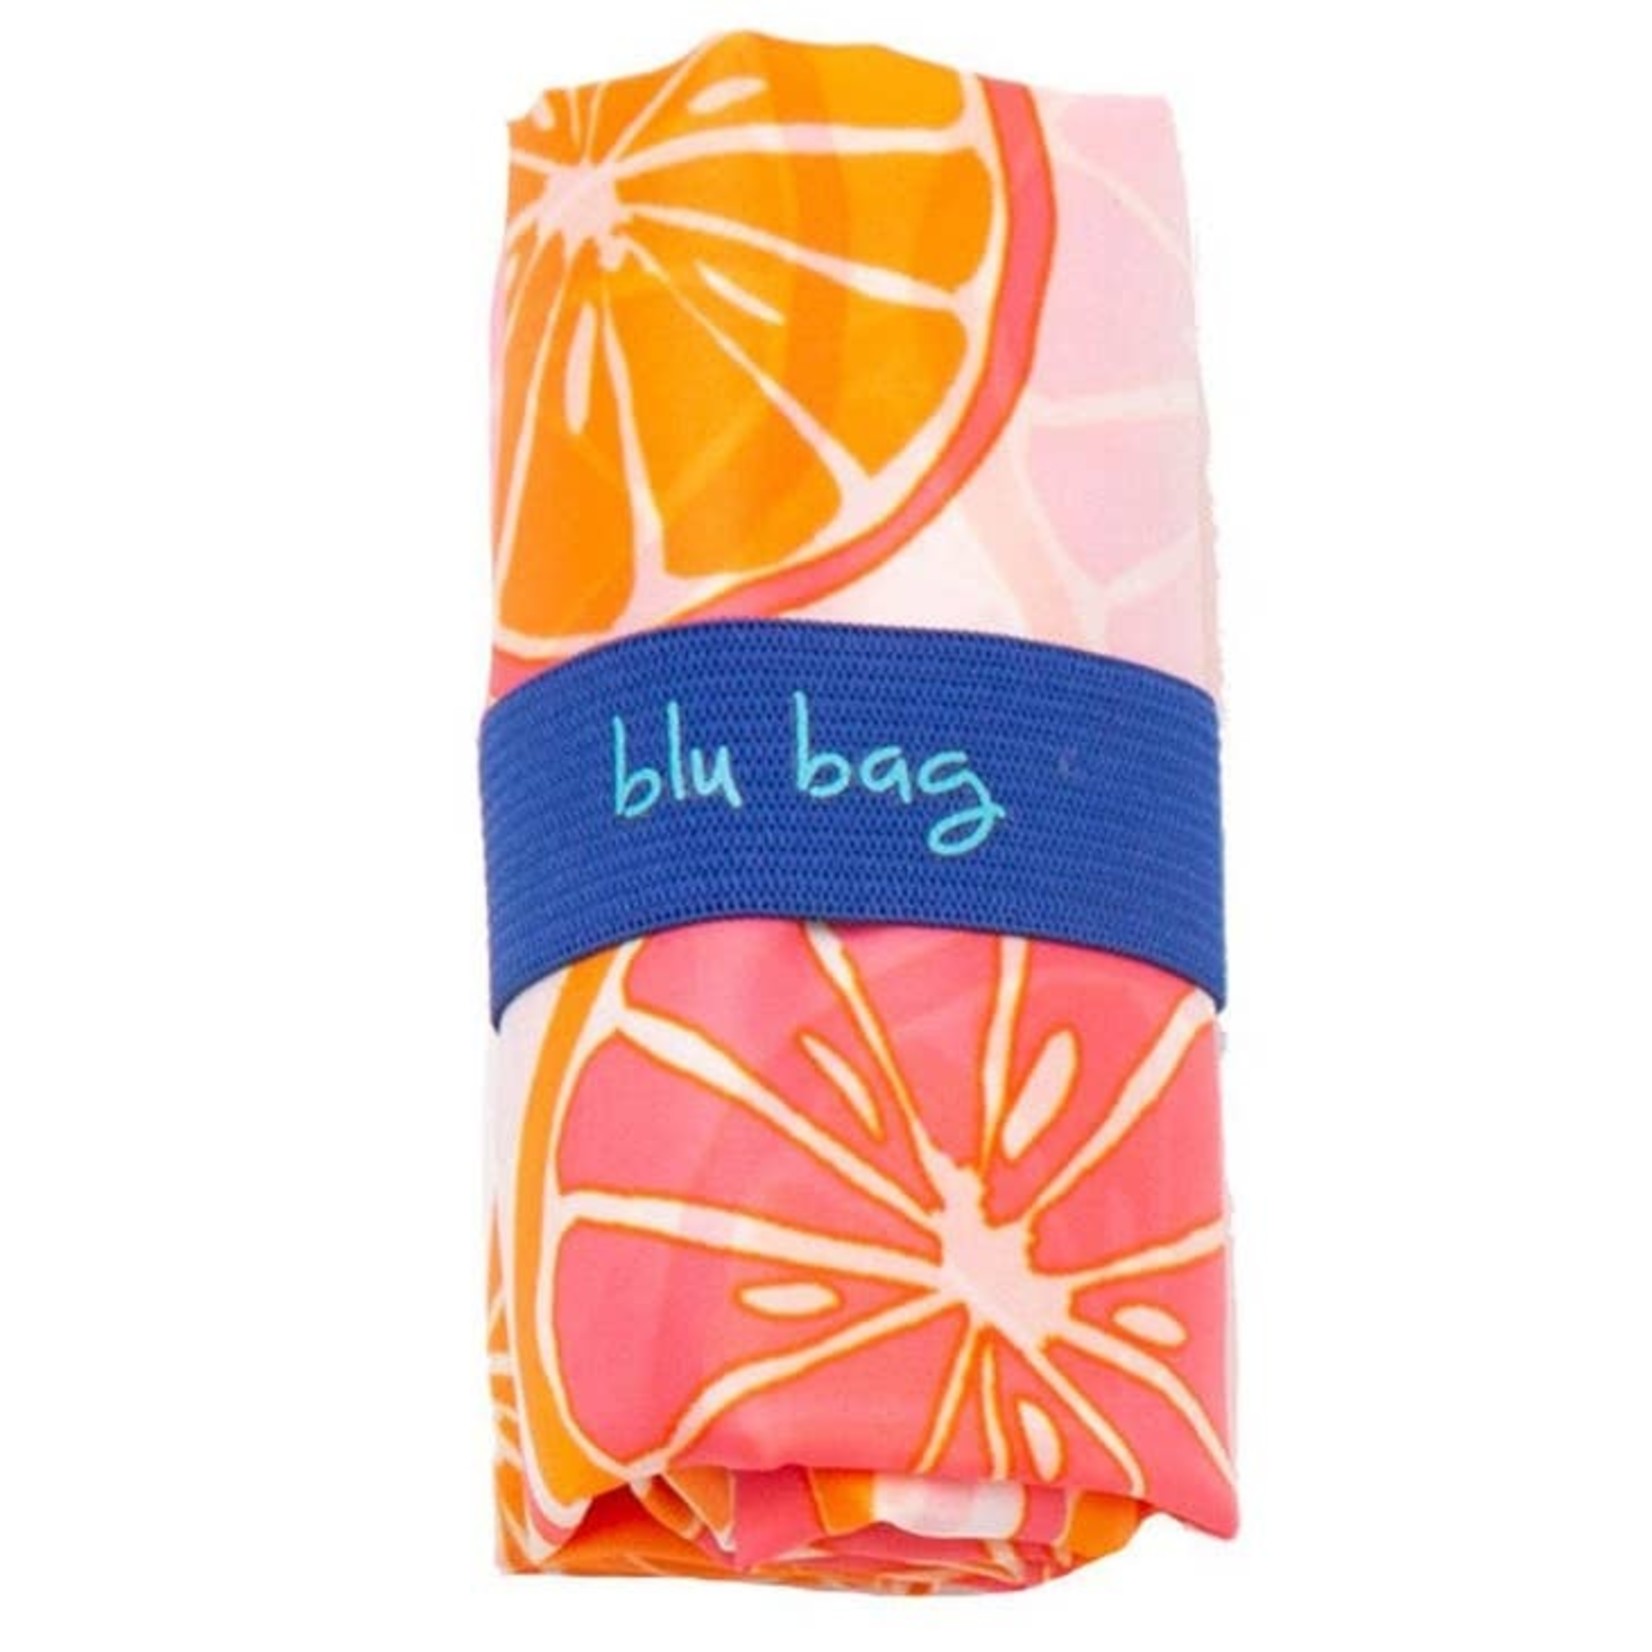 Blu Bag in Citrus